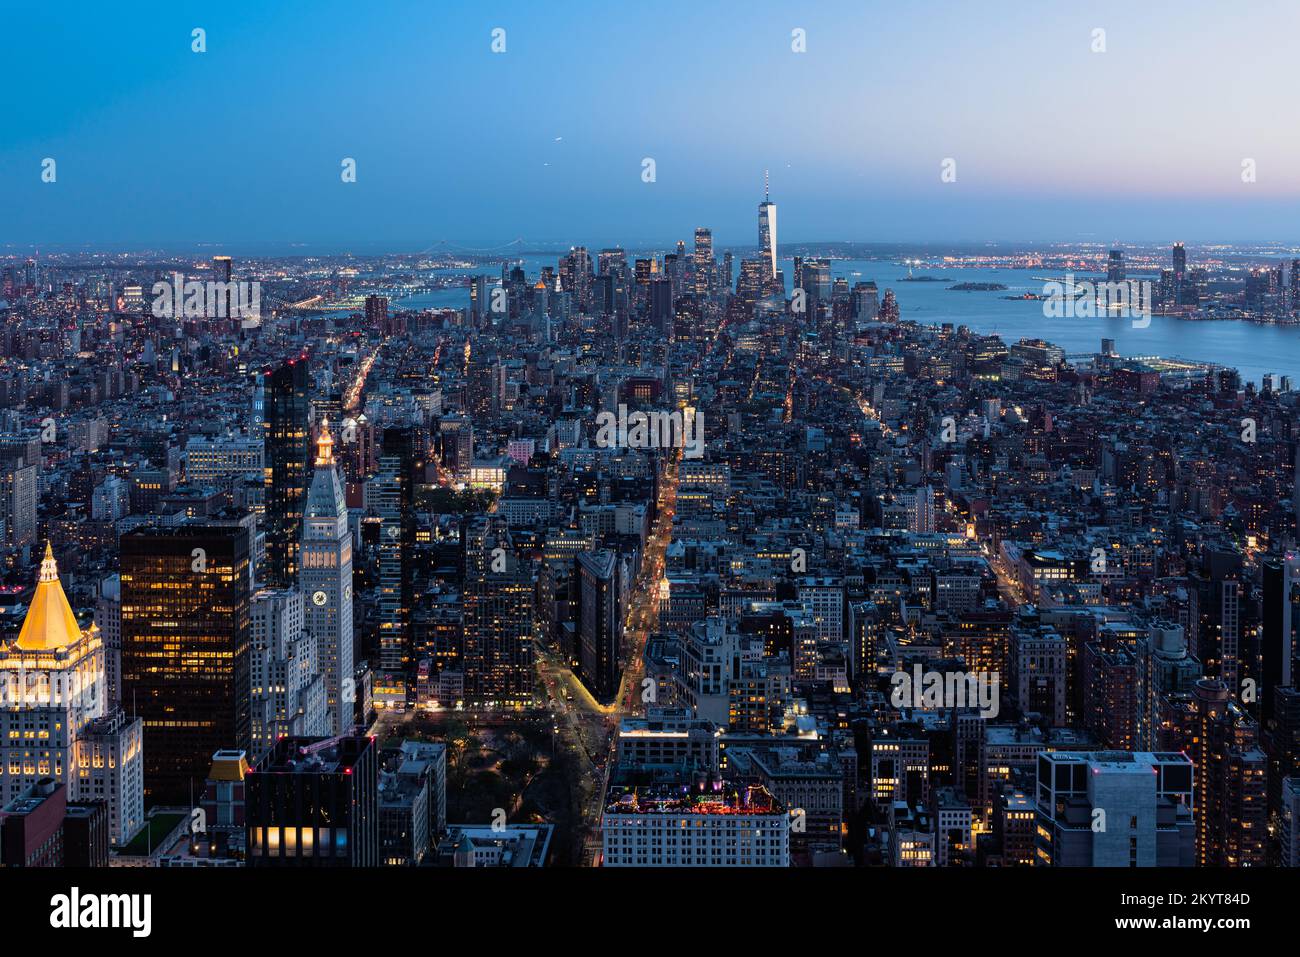 aerial panoramic view of Manhattan at night Stock Photo